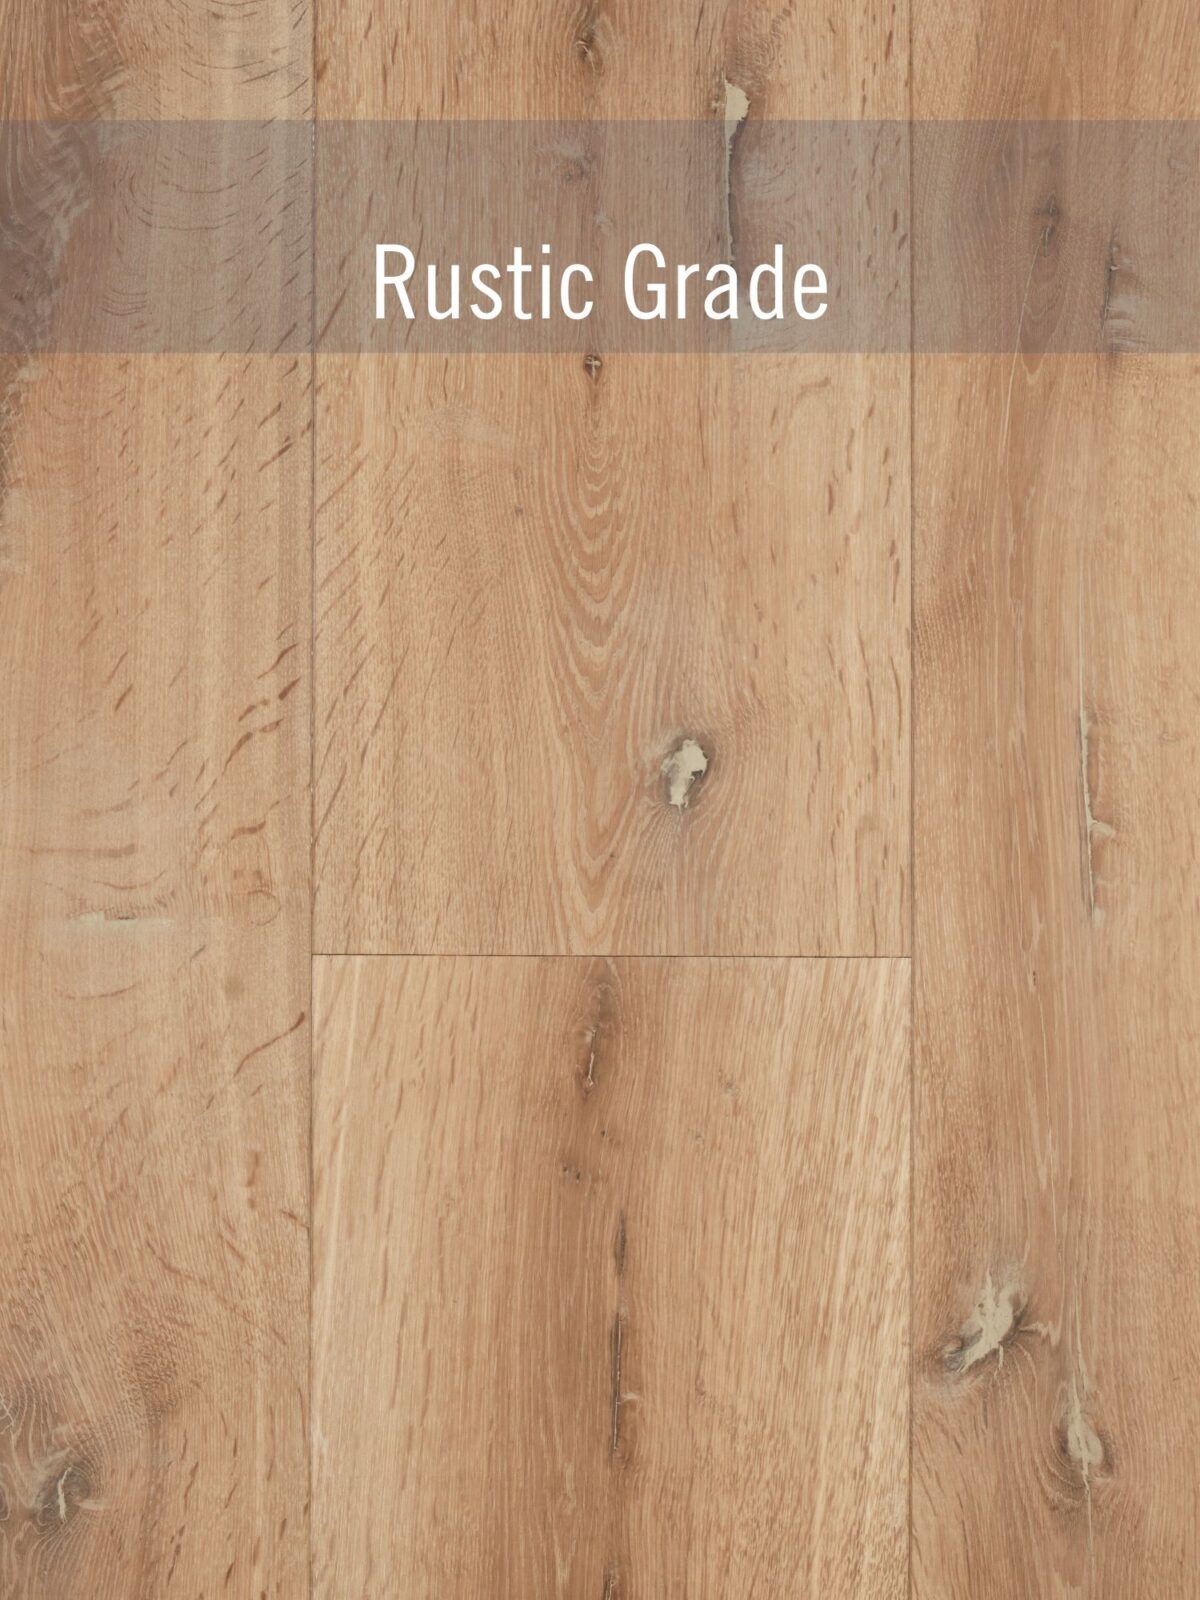 rustic grade flooring